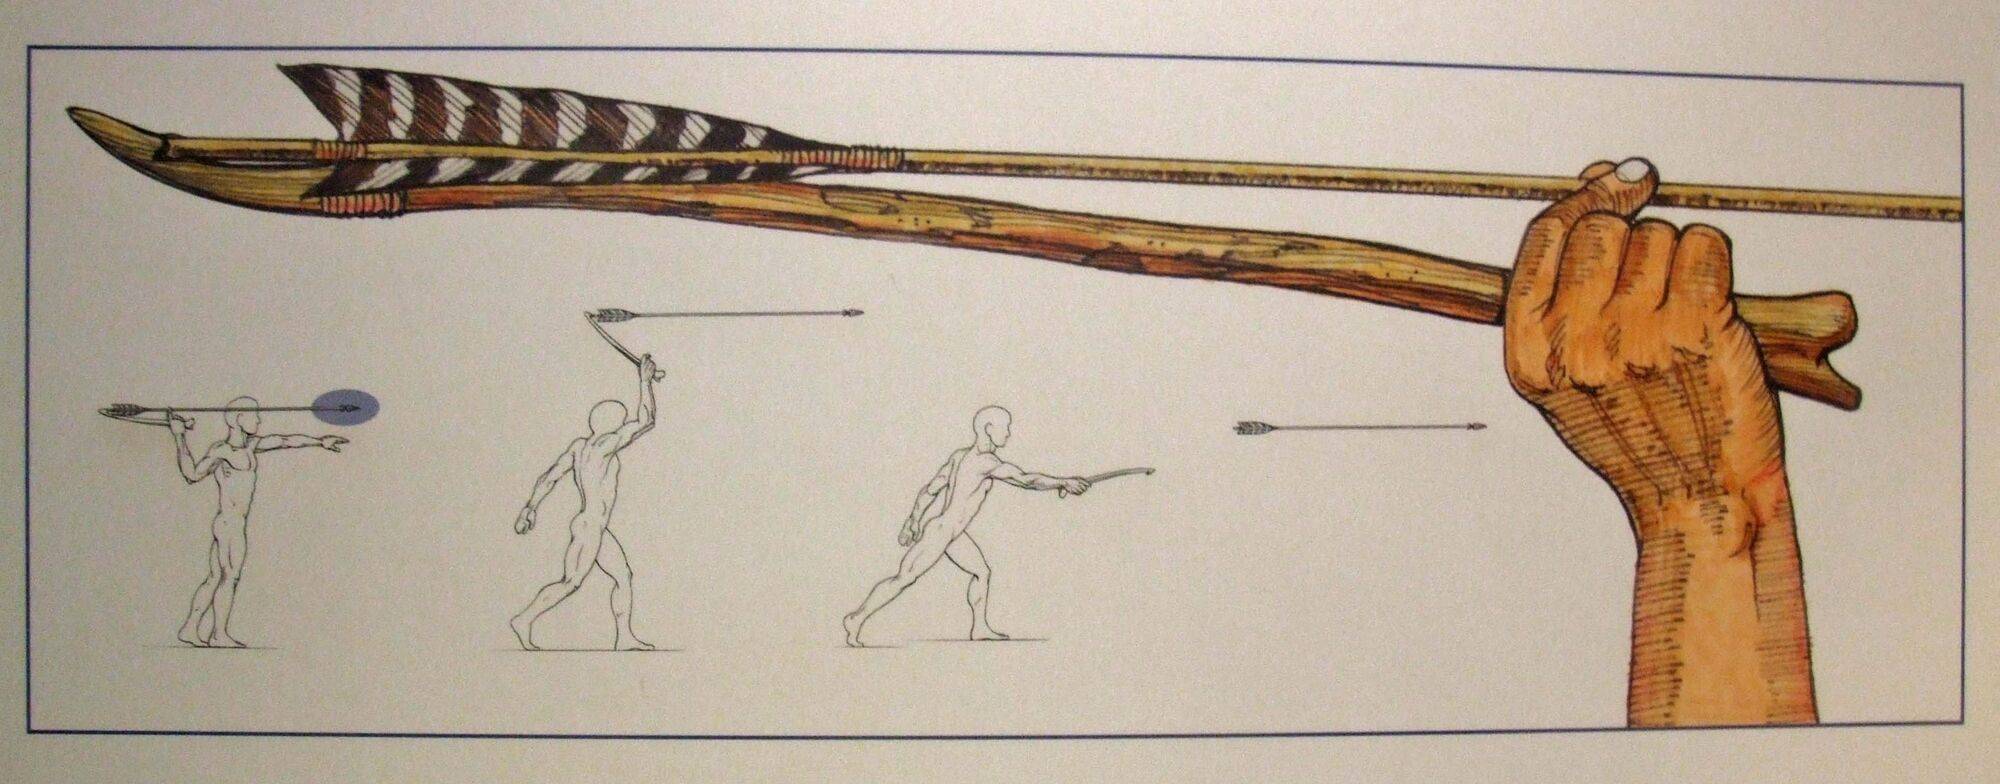 Праща - античное метательное оружие, как сделать и пользоваться, снаряды для стрельбы, история появления и причины полулярности, дальность броска